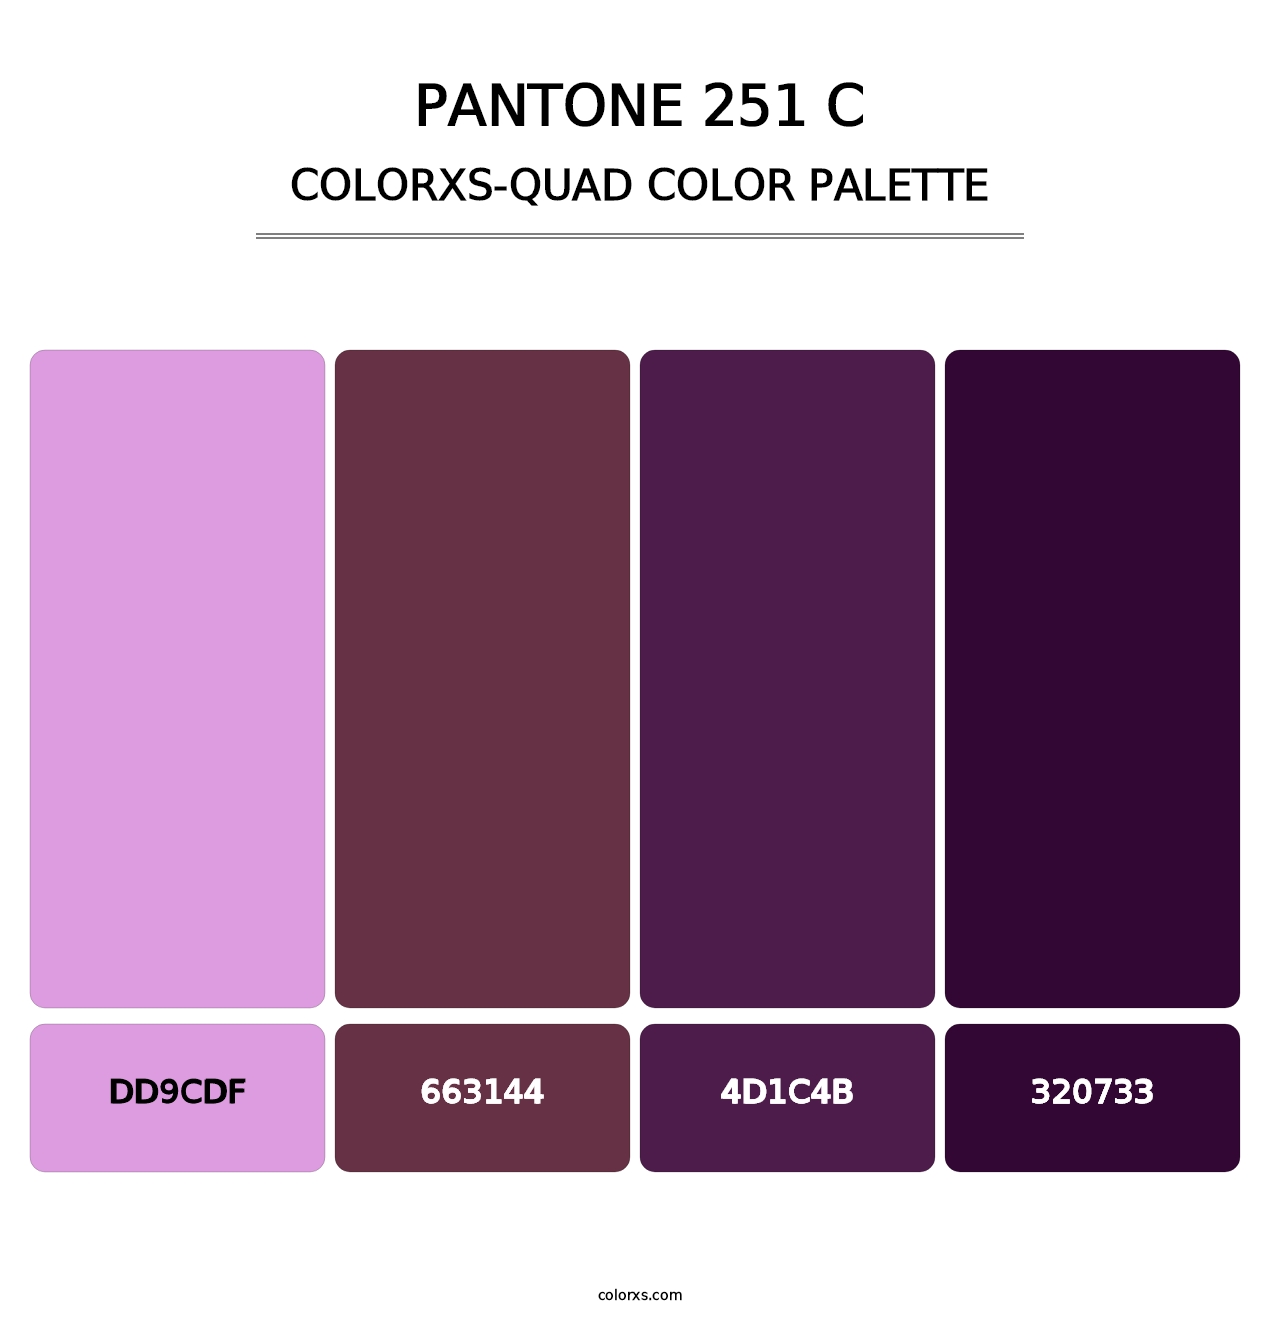 PANTONE 251 C - Colorxs Quad Palette